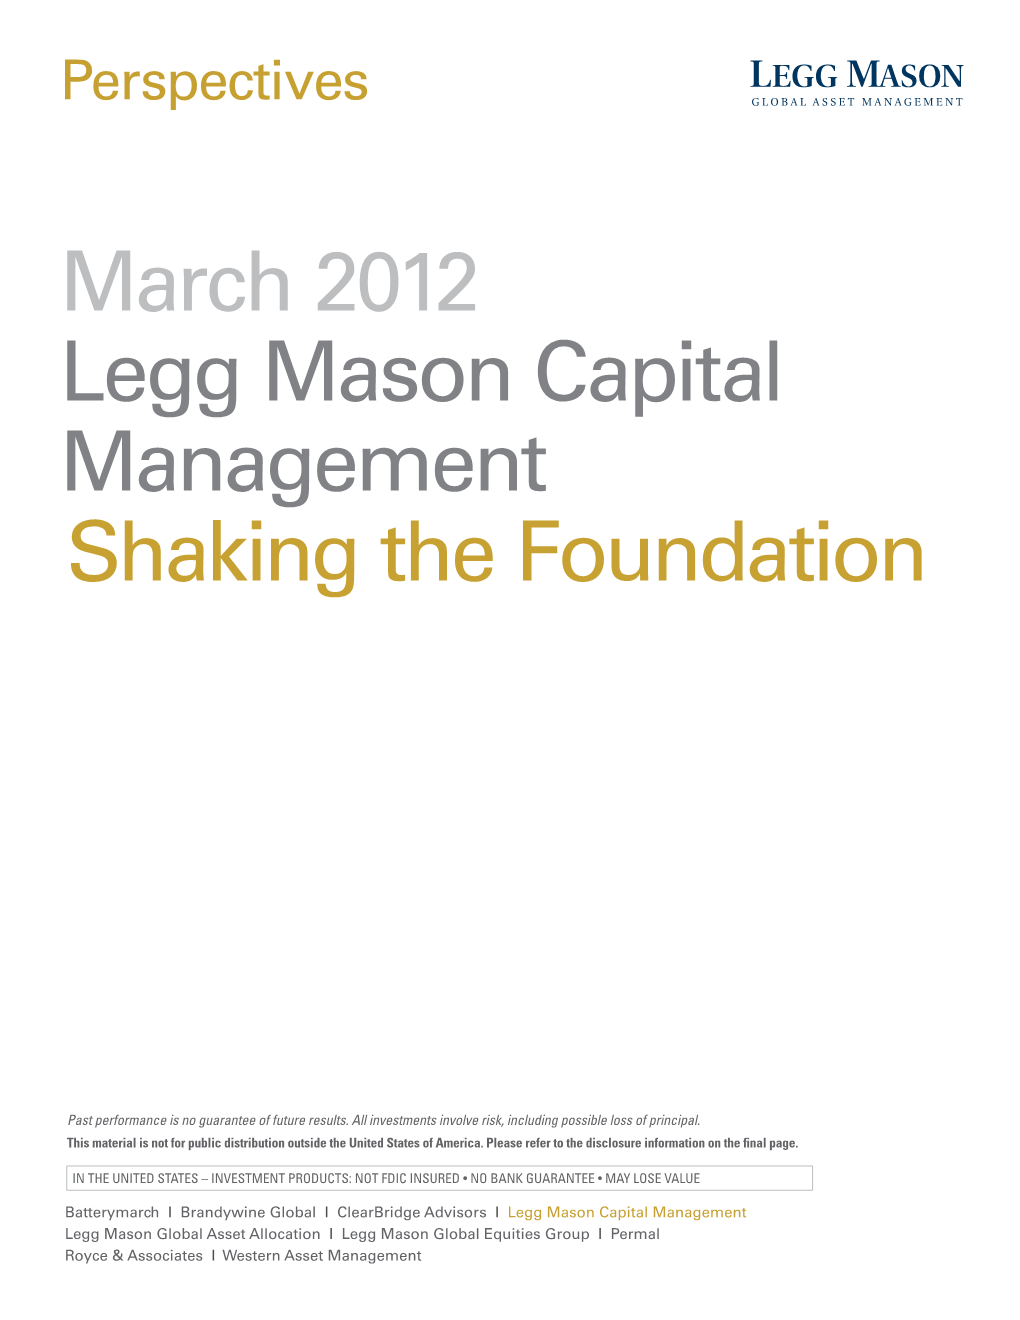 March 2012 Legg Mason Capital Management Shaking the Foundation